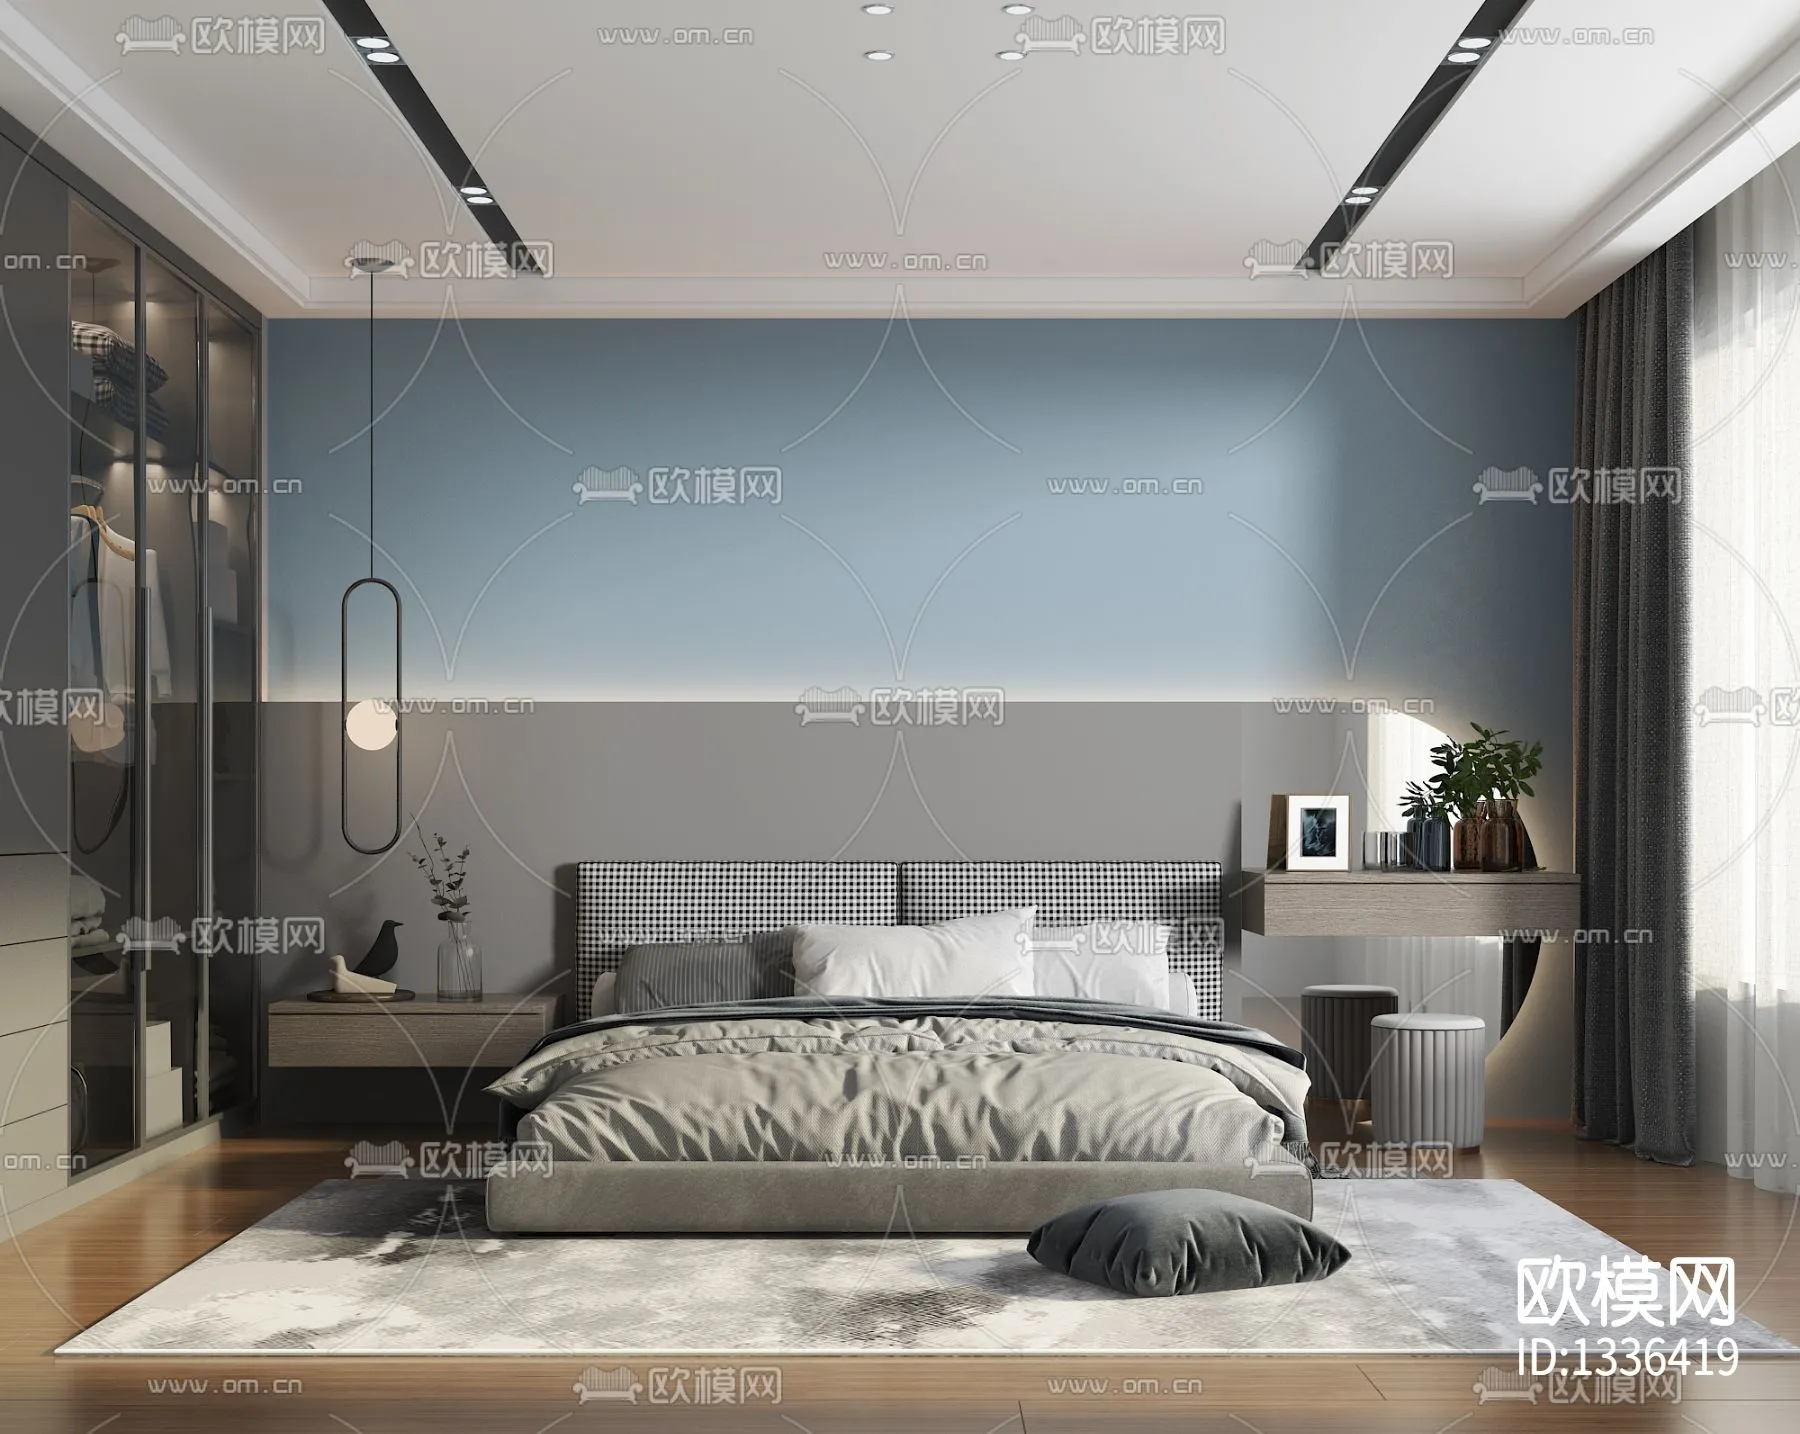 Bedroom 3D Scenes – 0292